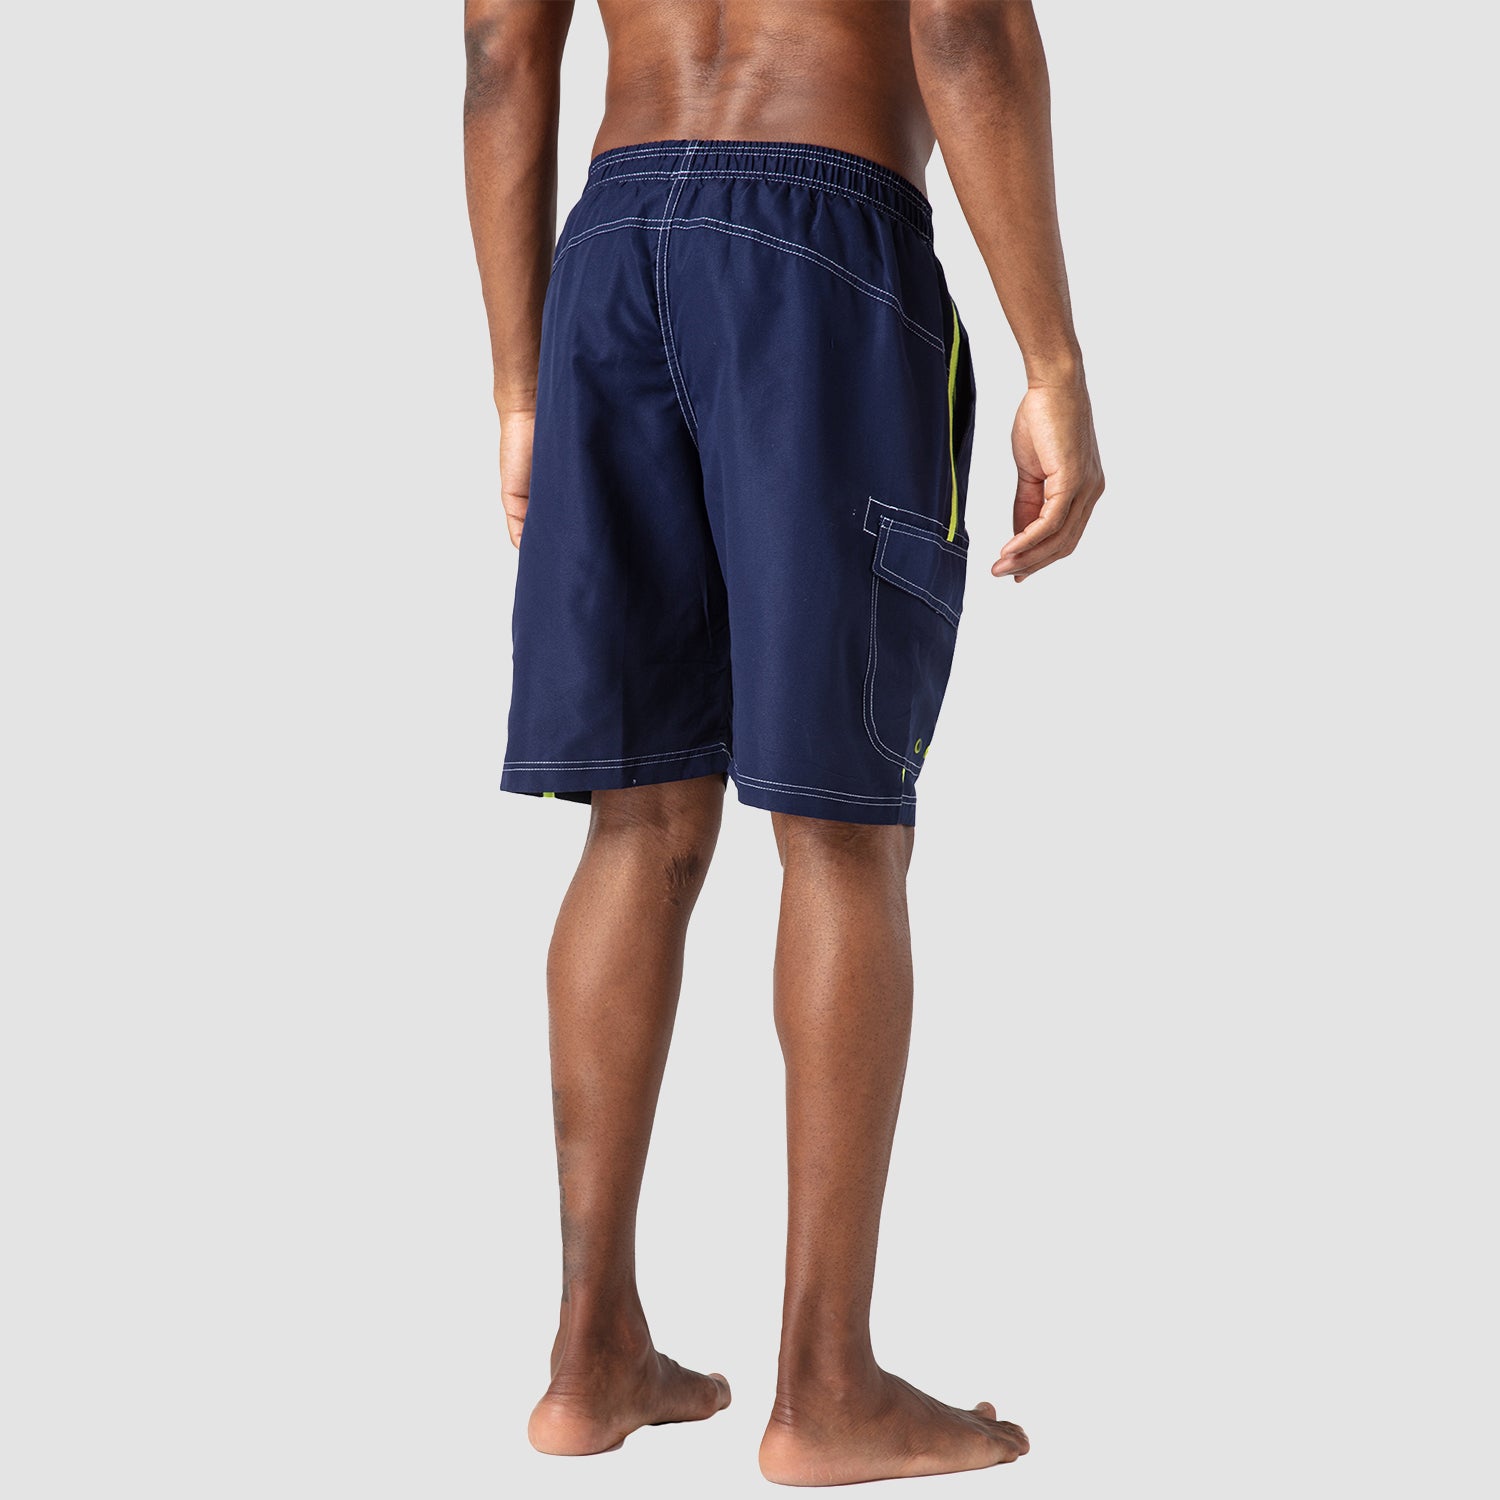 Men's Swimming Trunks Mesh Linner 4 Pockets Quick Dry Beach Shorts